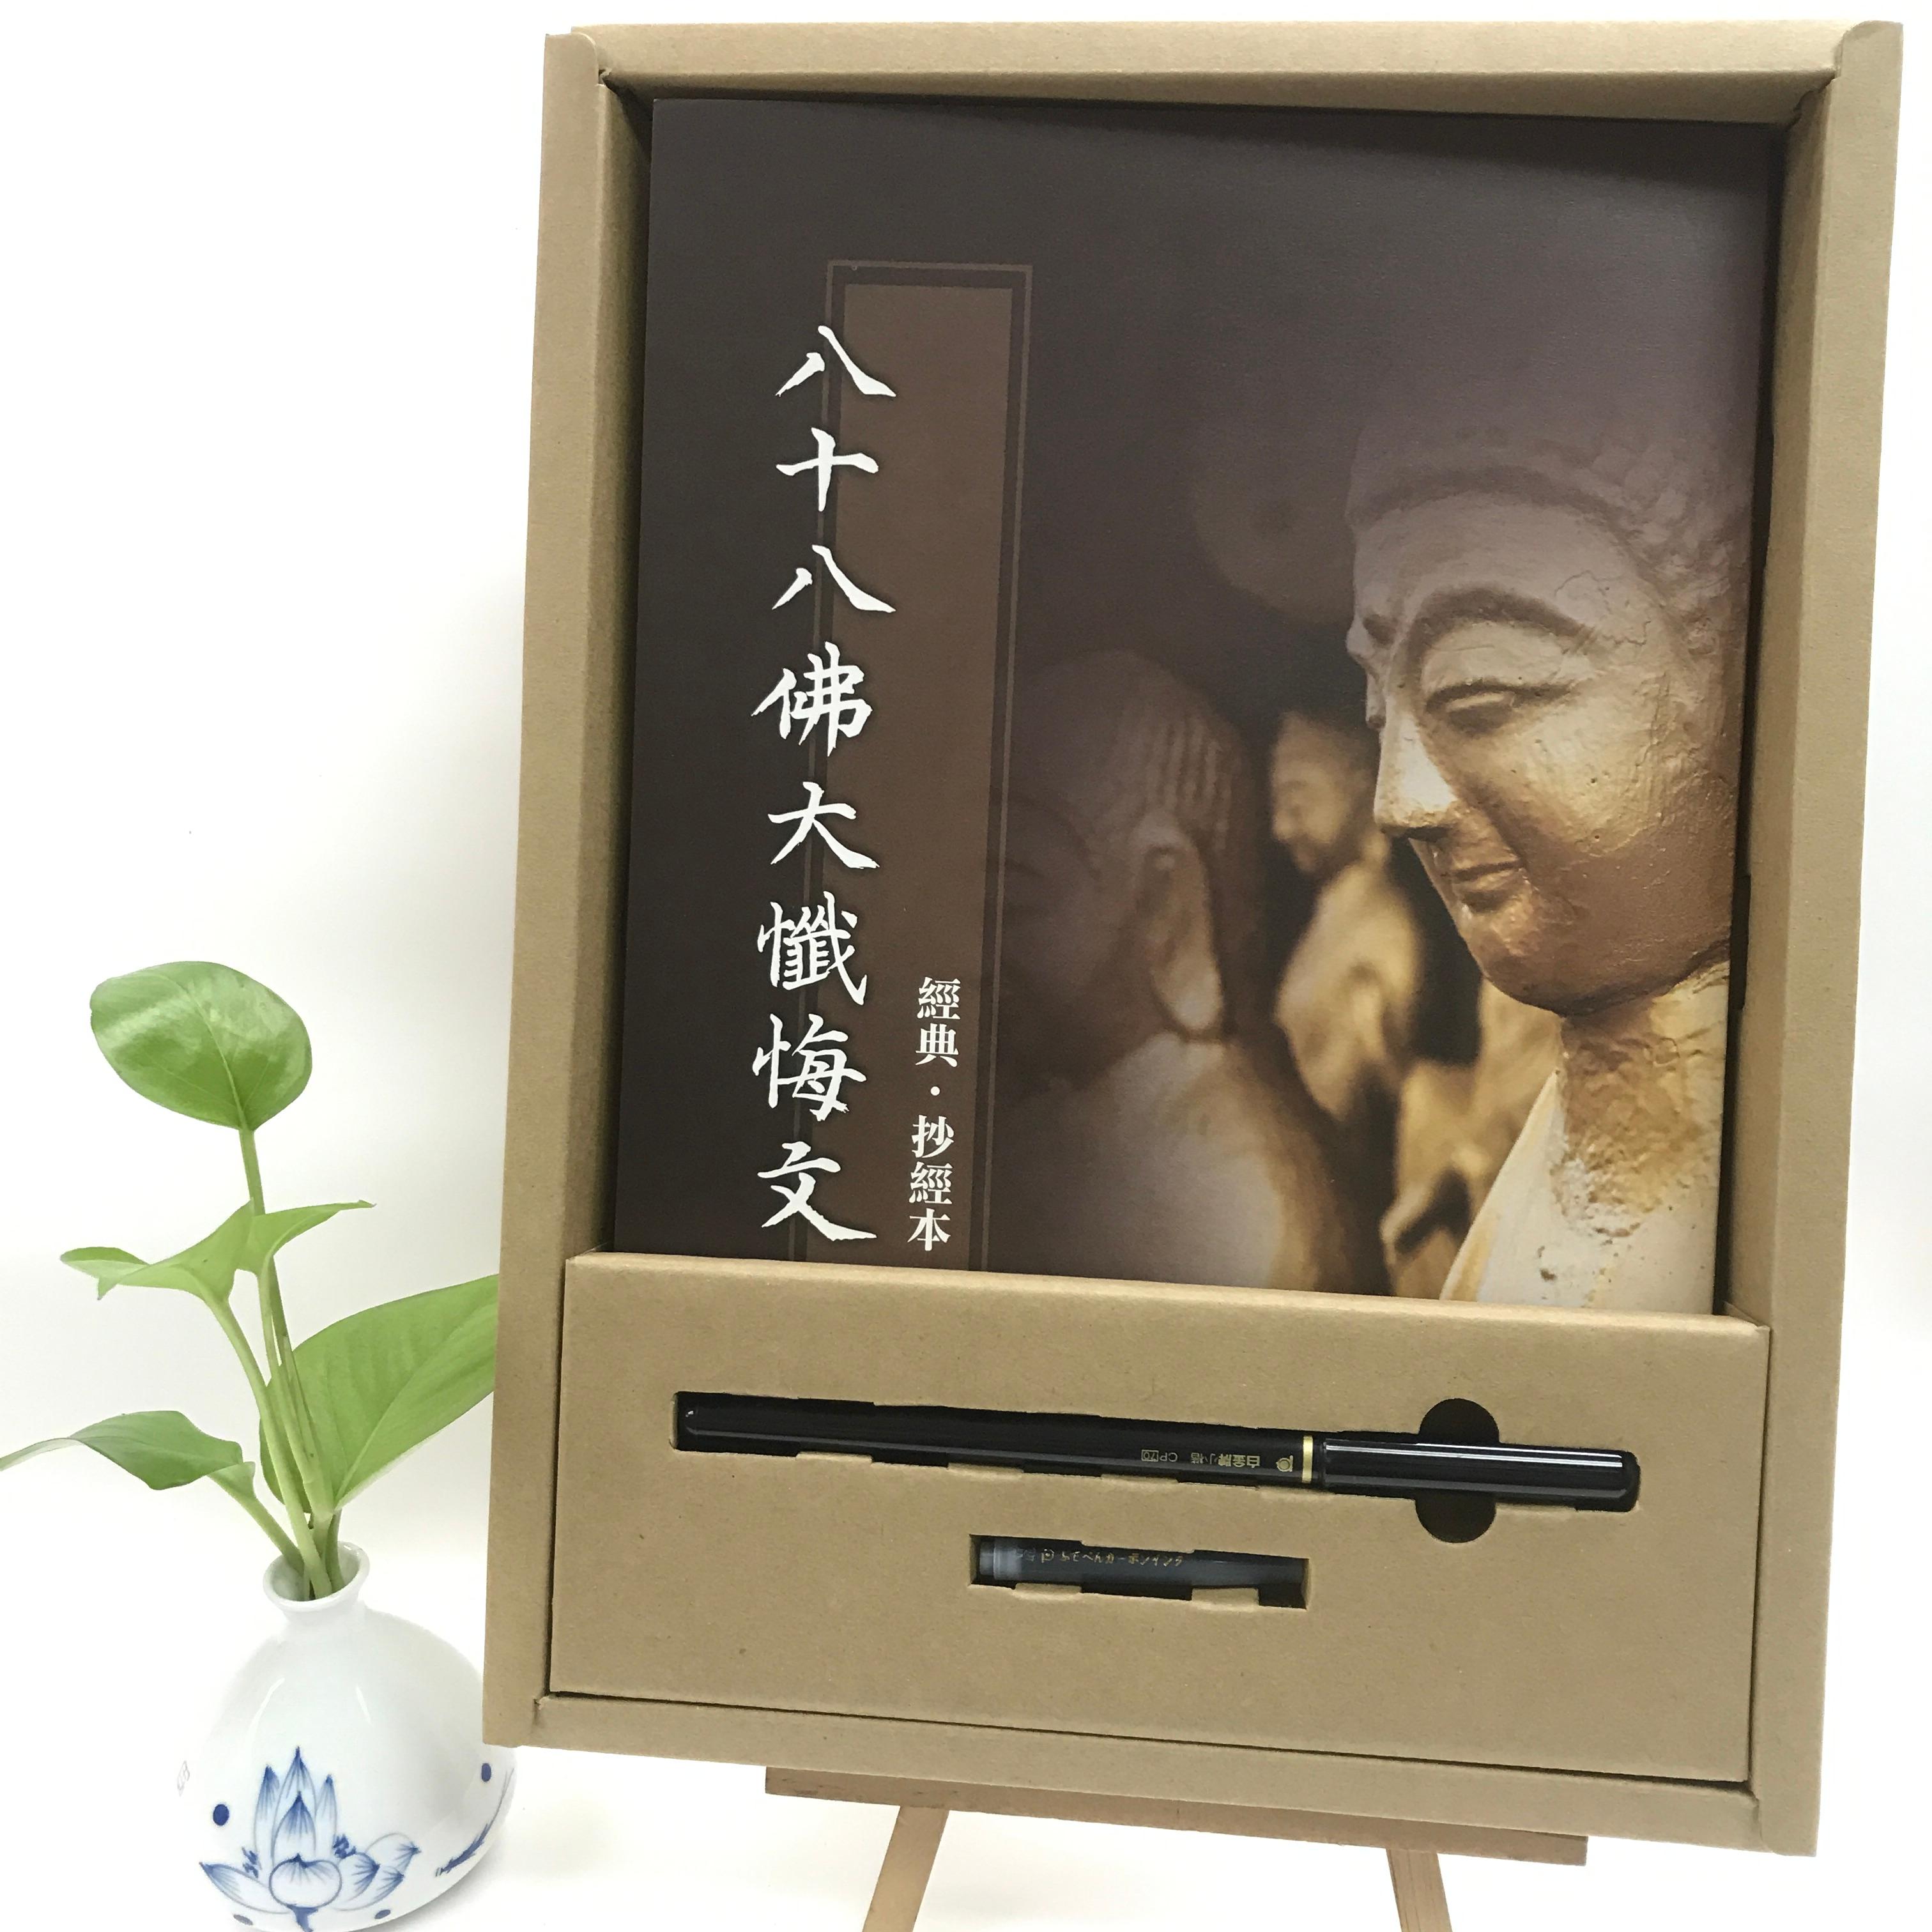 100位参加〈请阿弥陀佛转交的信〉清明愐怀先人征文活动的入选者，会获赠佛光文化特别设计的精美抄经本礼盒。